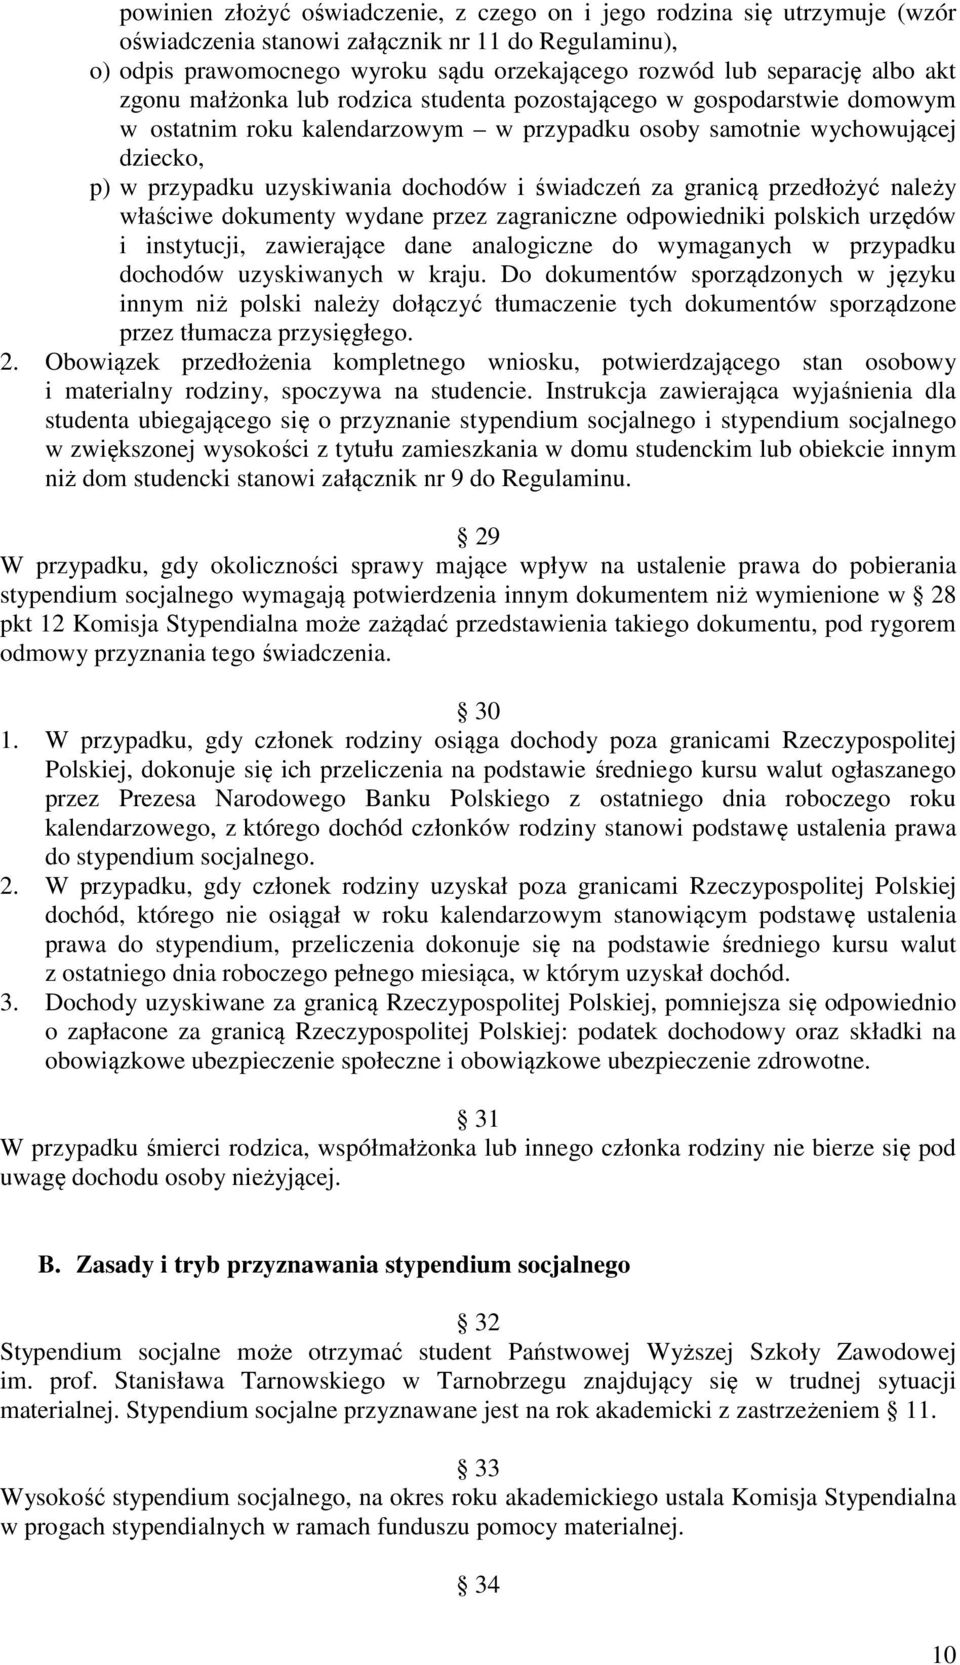 świadczeń za granicą przedłożyć należy właściwe dokumenty wydane przez zagraniczne odpowiedniki polskich urzędów i instytucji, zawierające dane analogiczne do wymaganych w przypadku dochodów